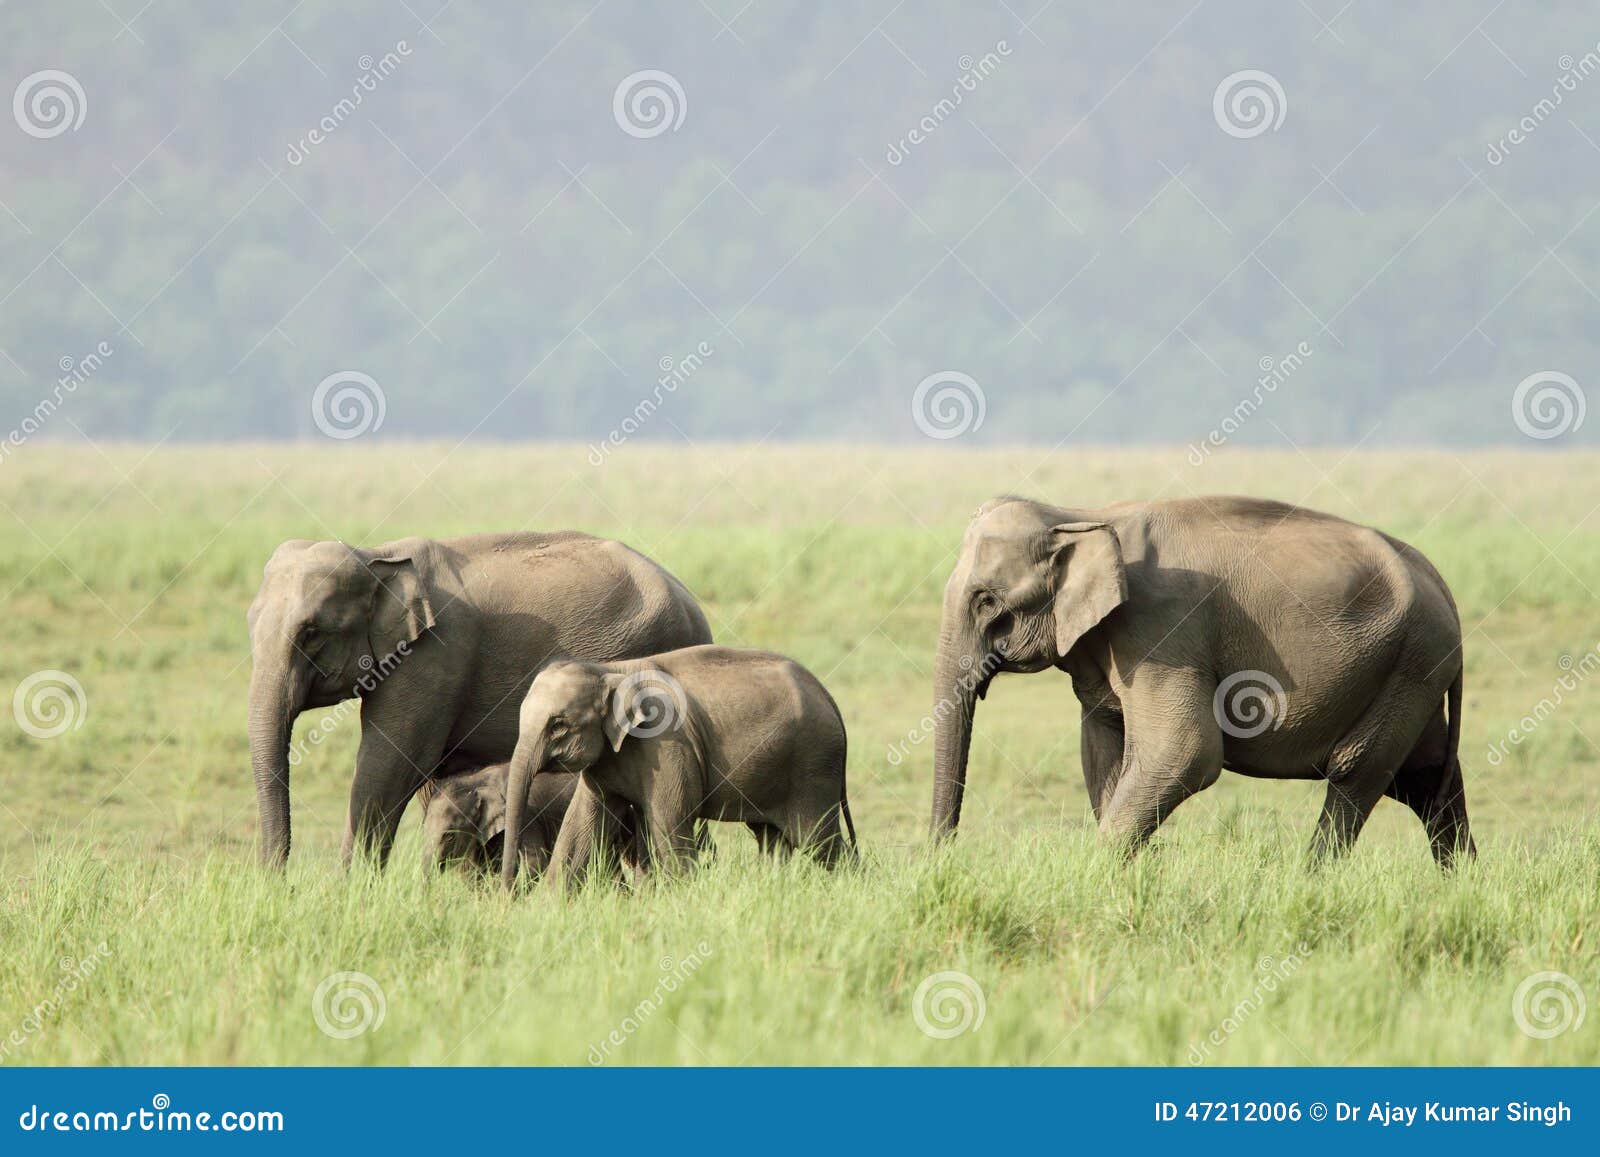 elephants in jim corbett grassland